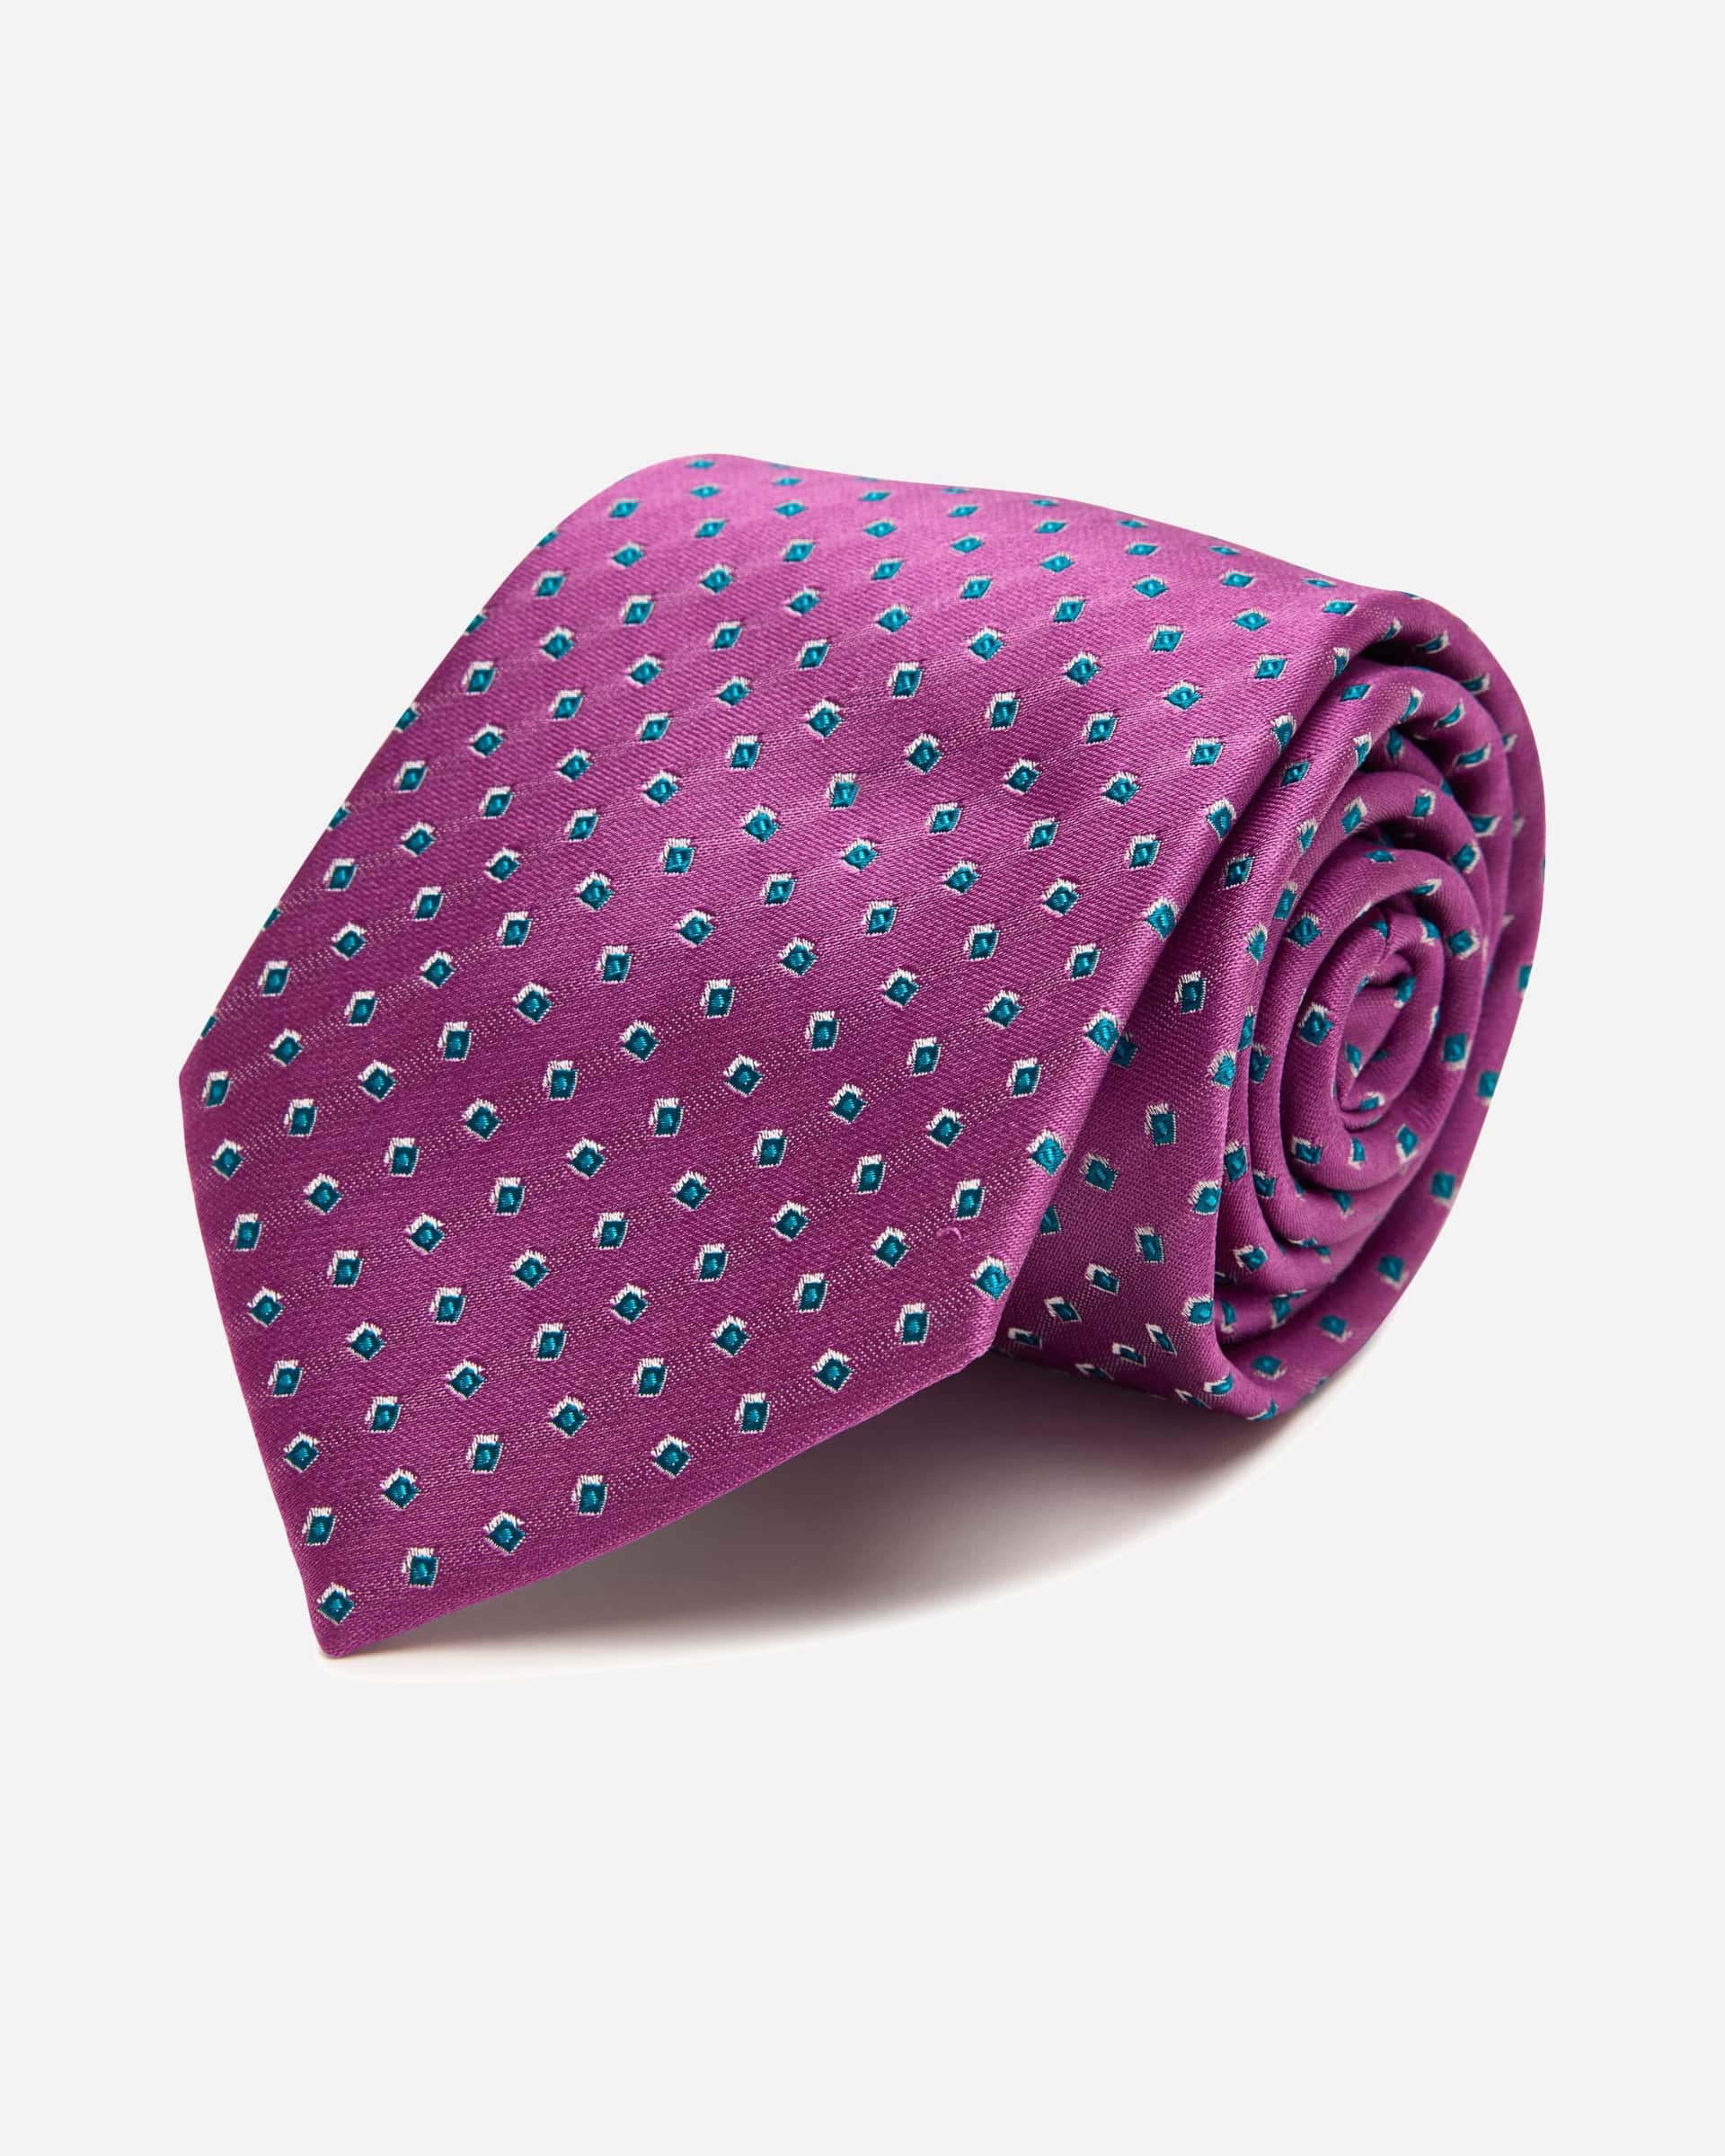 Sampson Purple Silk Tie - Men's Ties at Menzclub